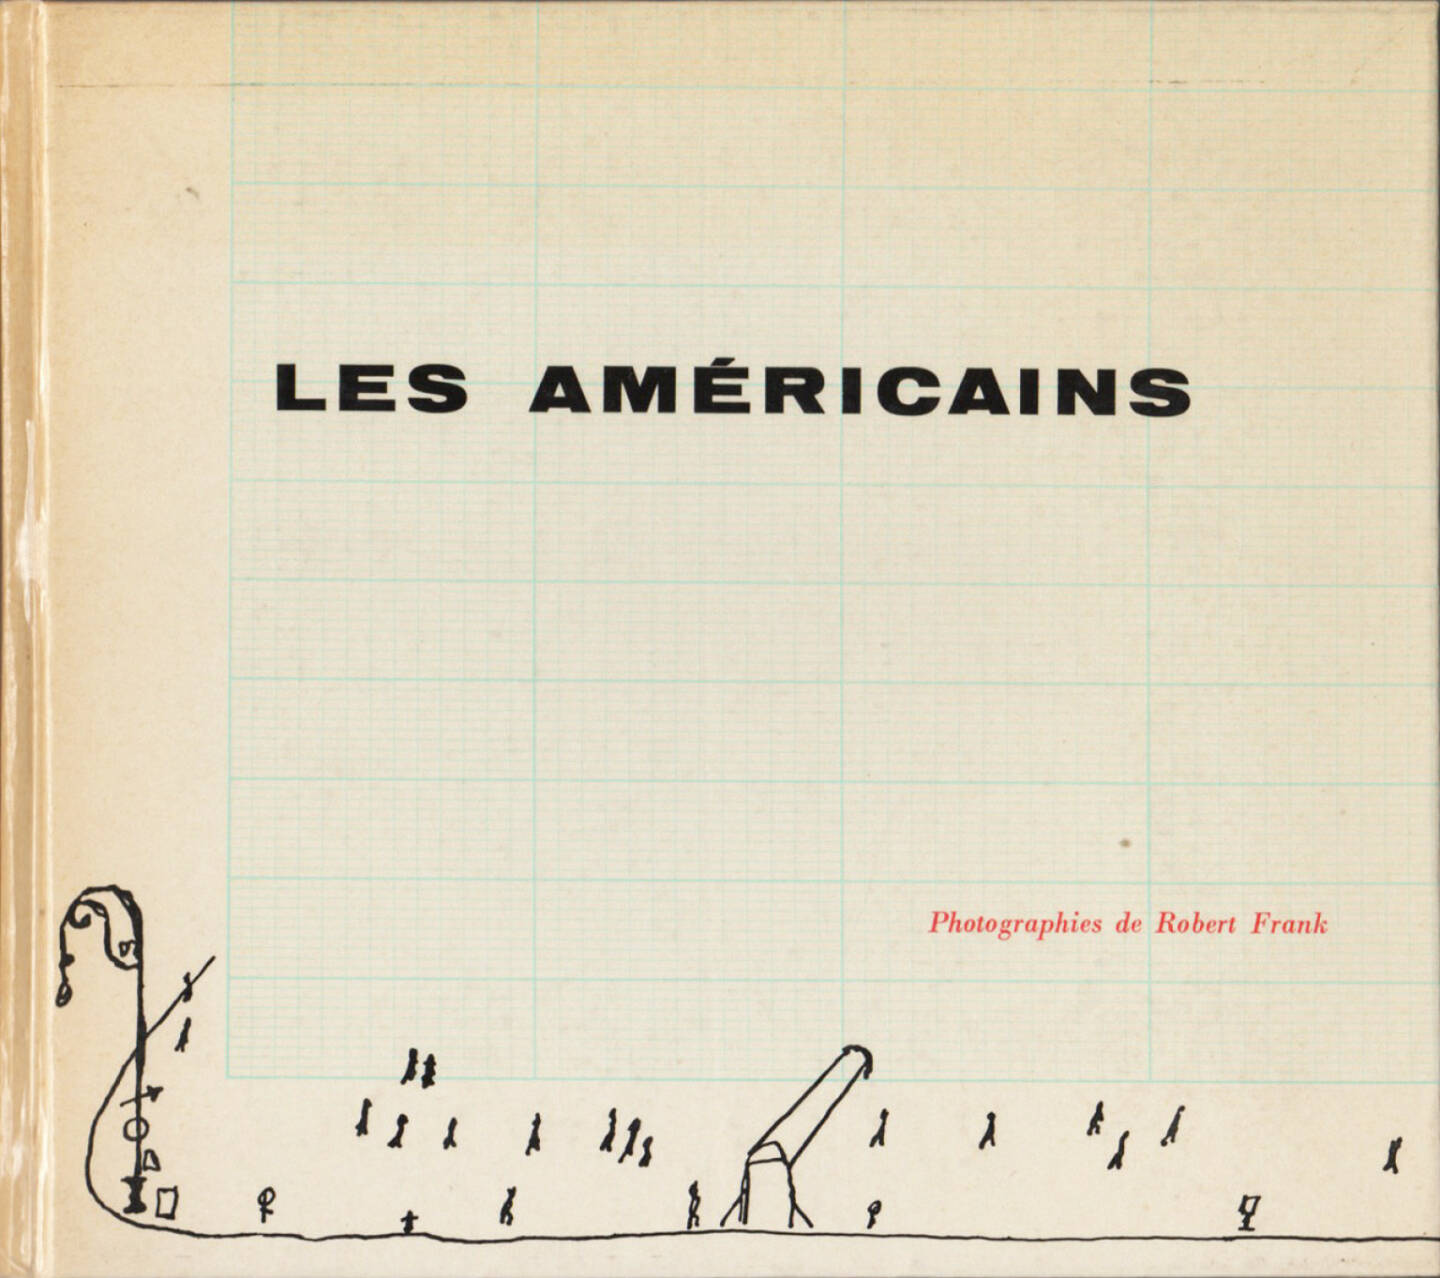 Robert Frank - Les Américains, Delpire 1958, Cover - http://josefchladek.com/book/robert_frank_-_les_americains